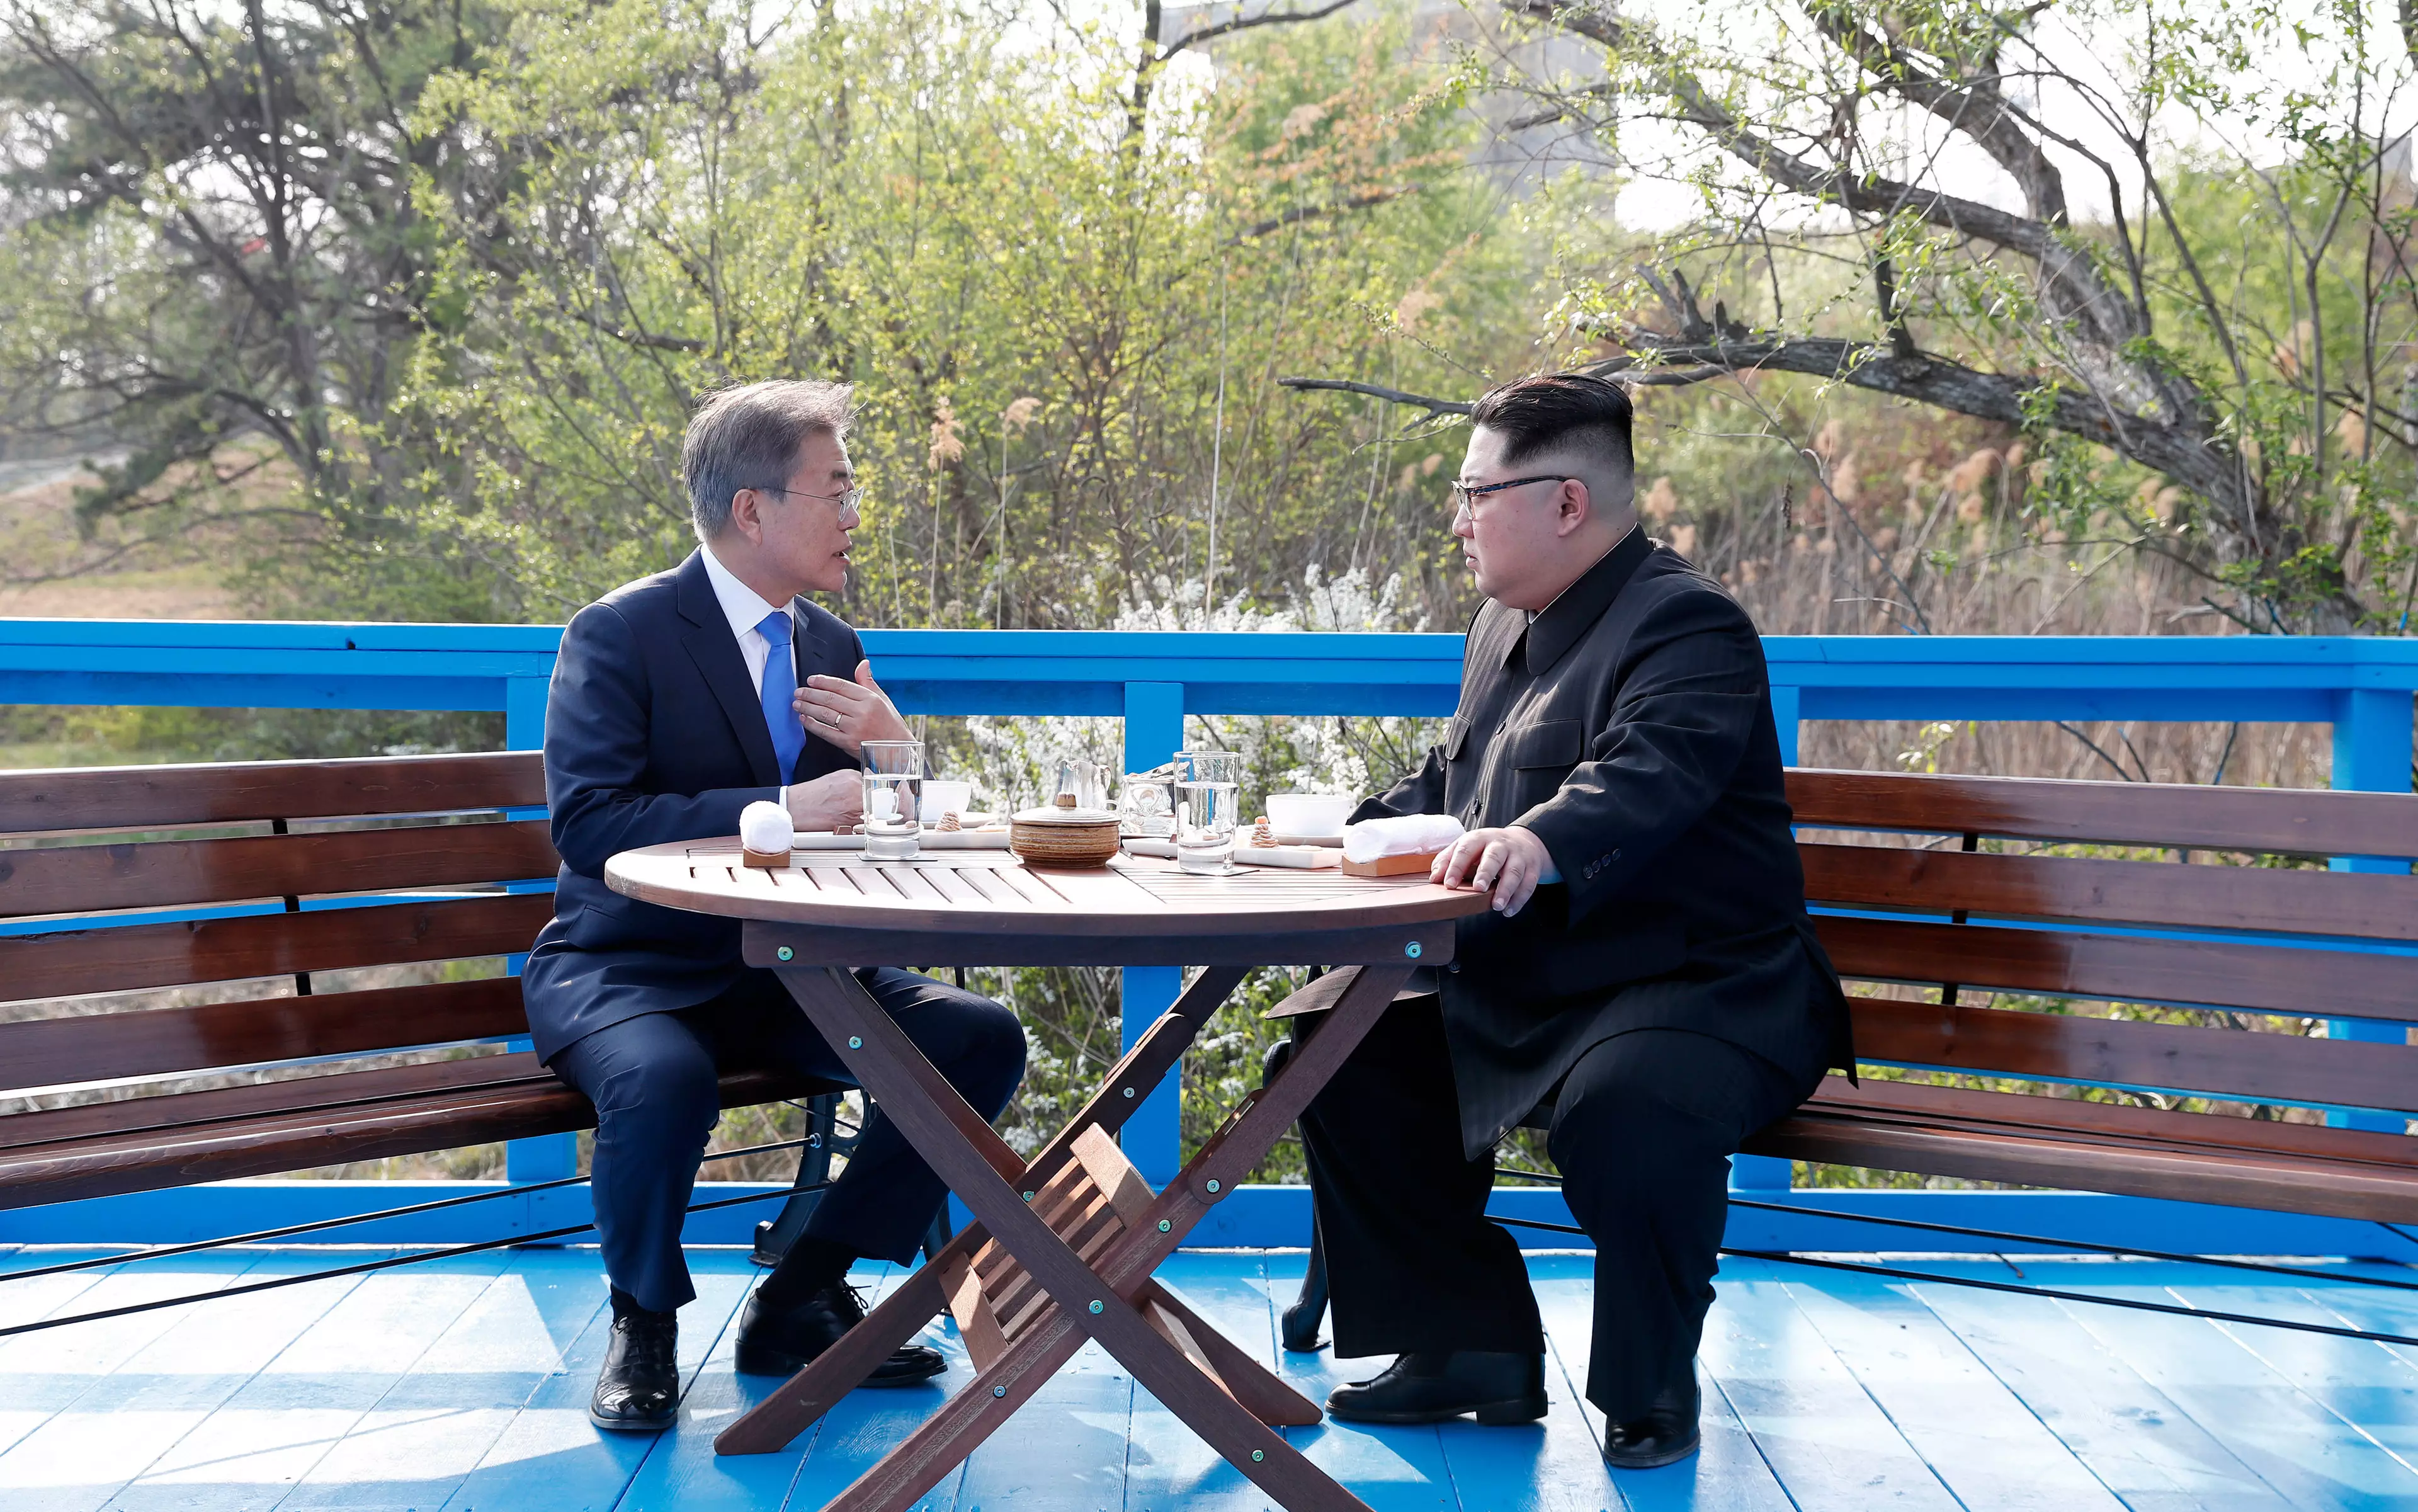 Lip Readers Study Conversation Between Kim Jong Un And Moon Jae-In